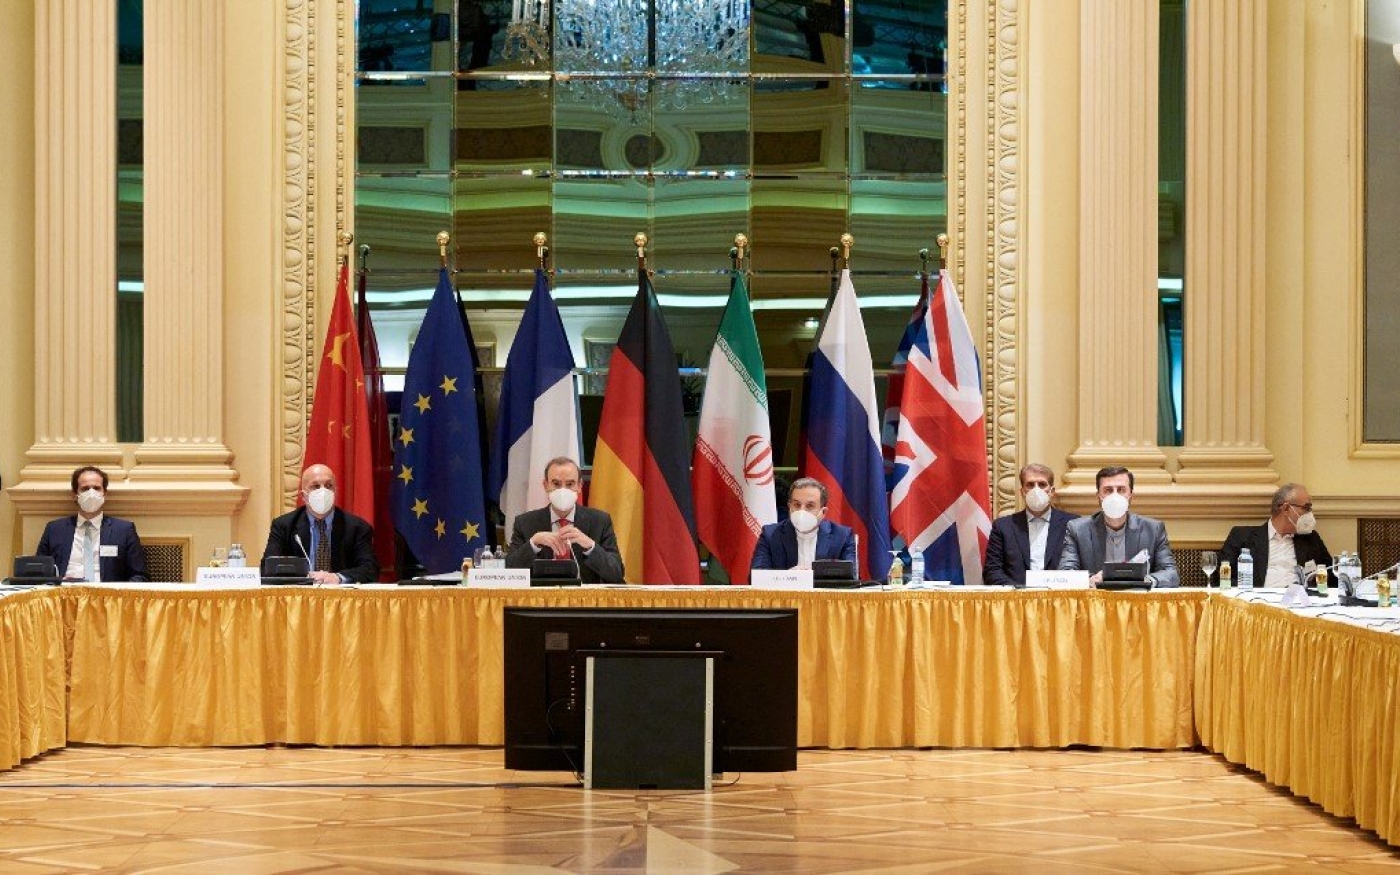 Les diplomates se rencontrent pour des négociations sur le nucléaire irakien à Vienne, le 6 avril 2021 (Lars Ternes/délégation européenne à Vienne/AFP)